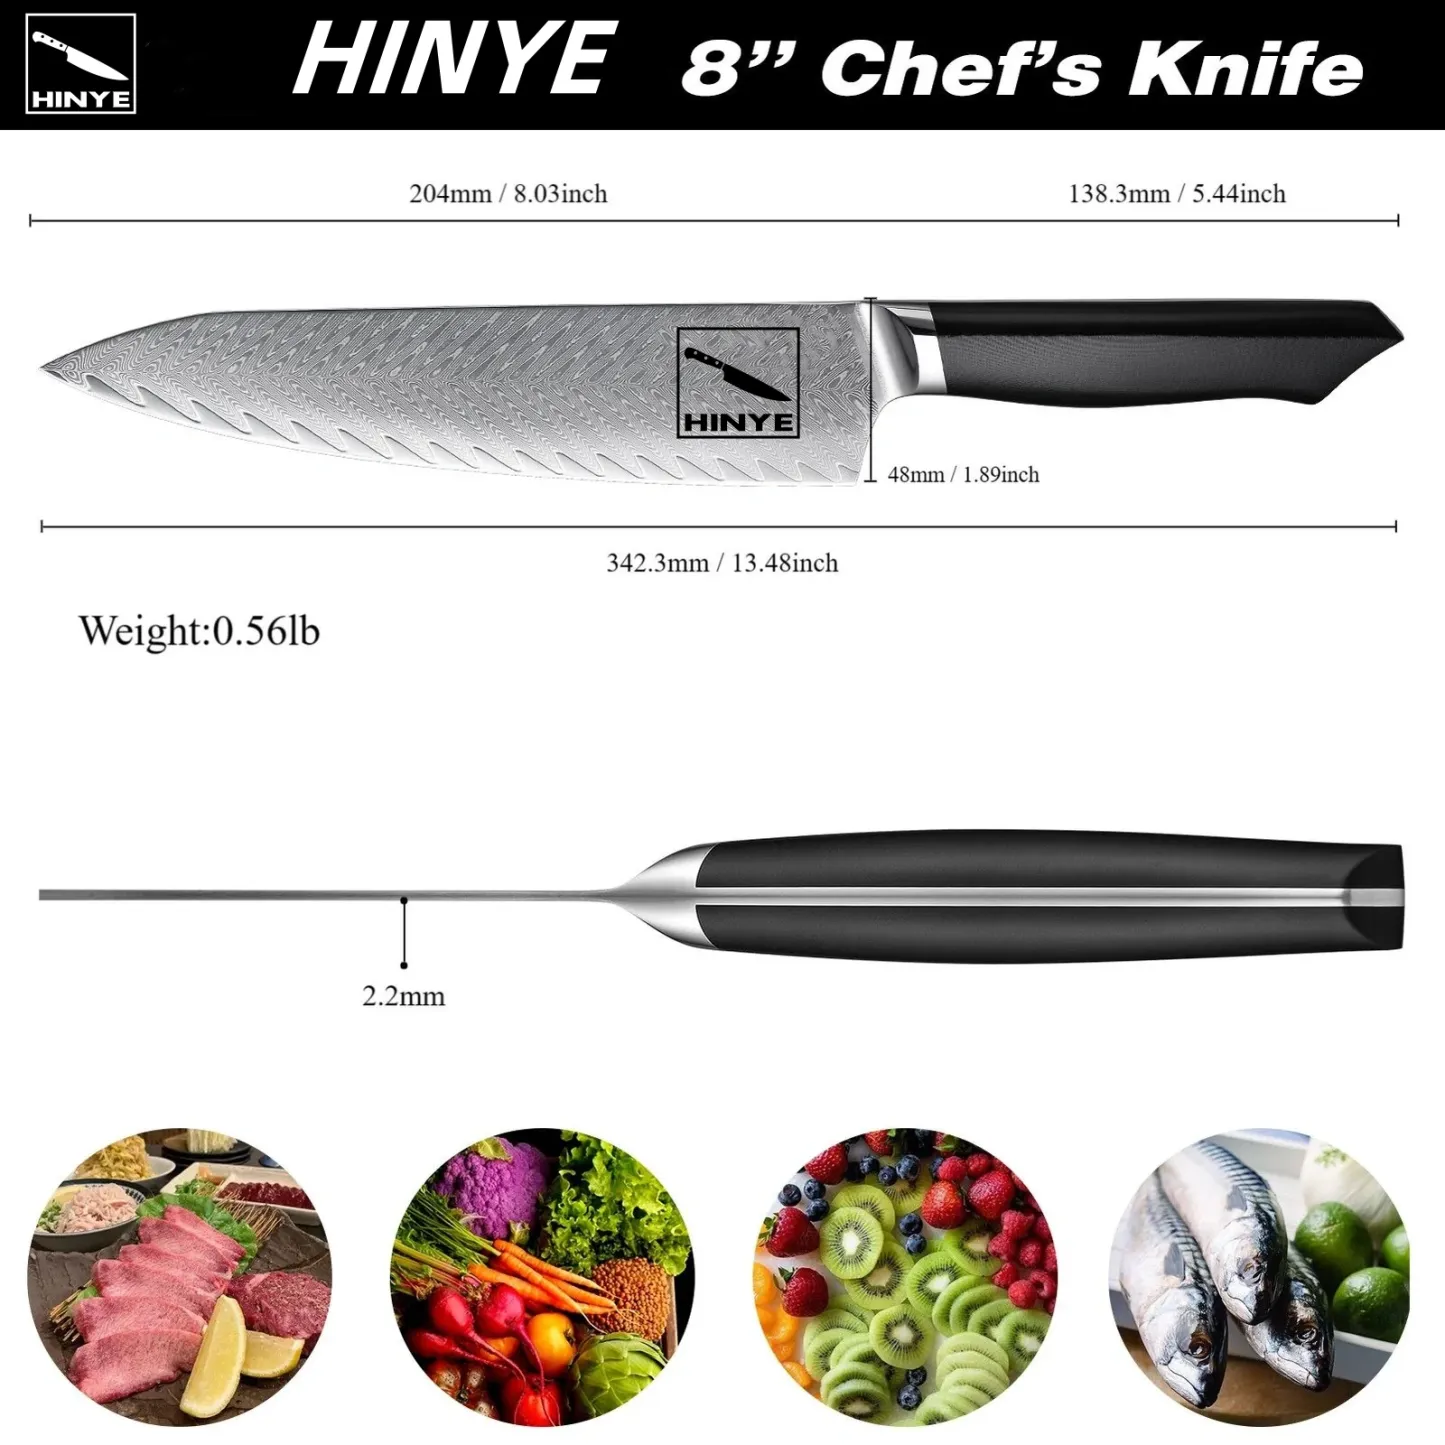 Hinye-Helix 8" Chef